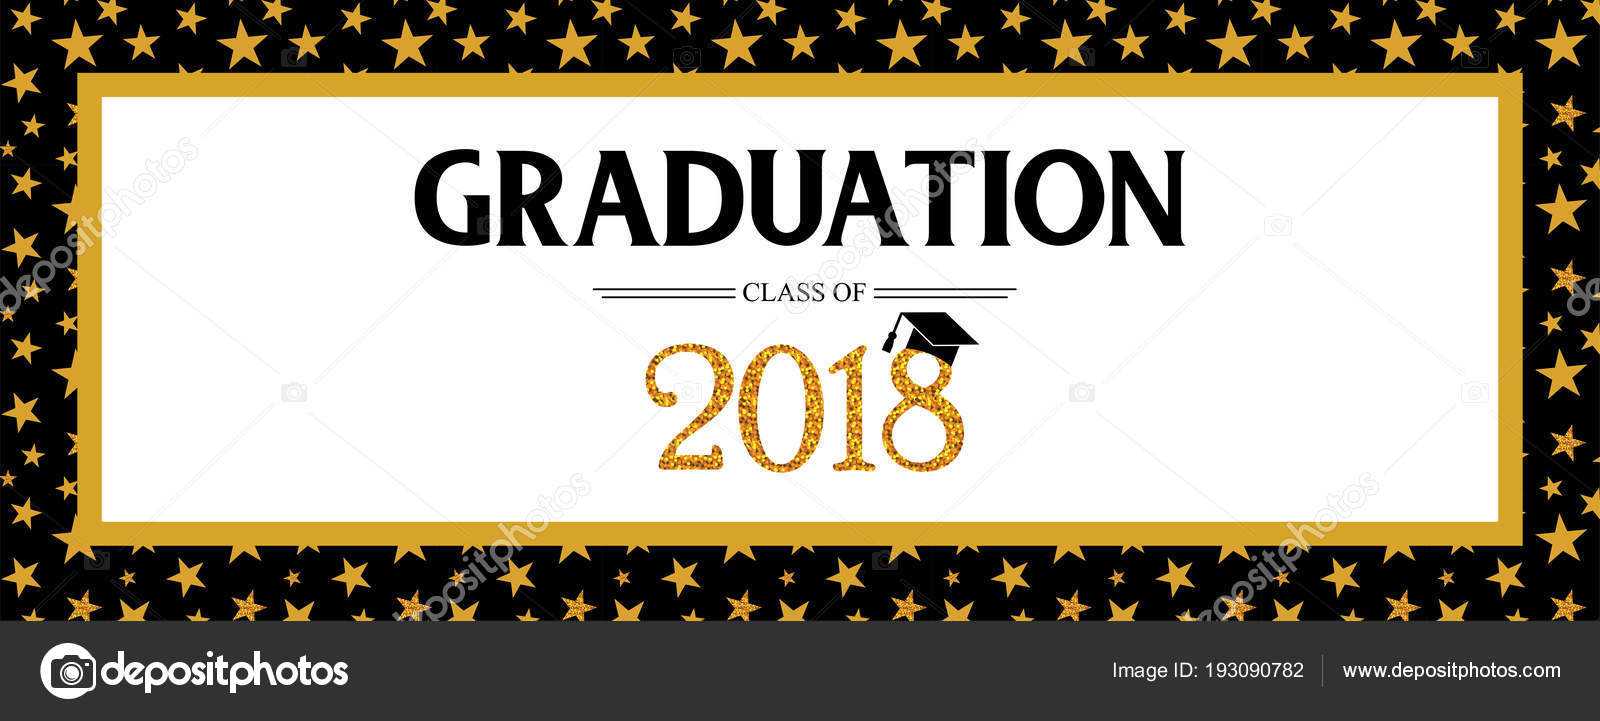 Graduation Banner Template | Graduation Class Of 2018 For Graduation Banner Template